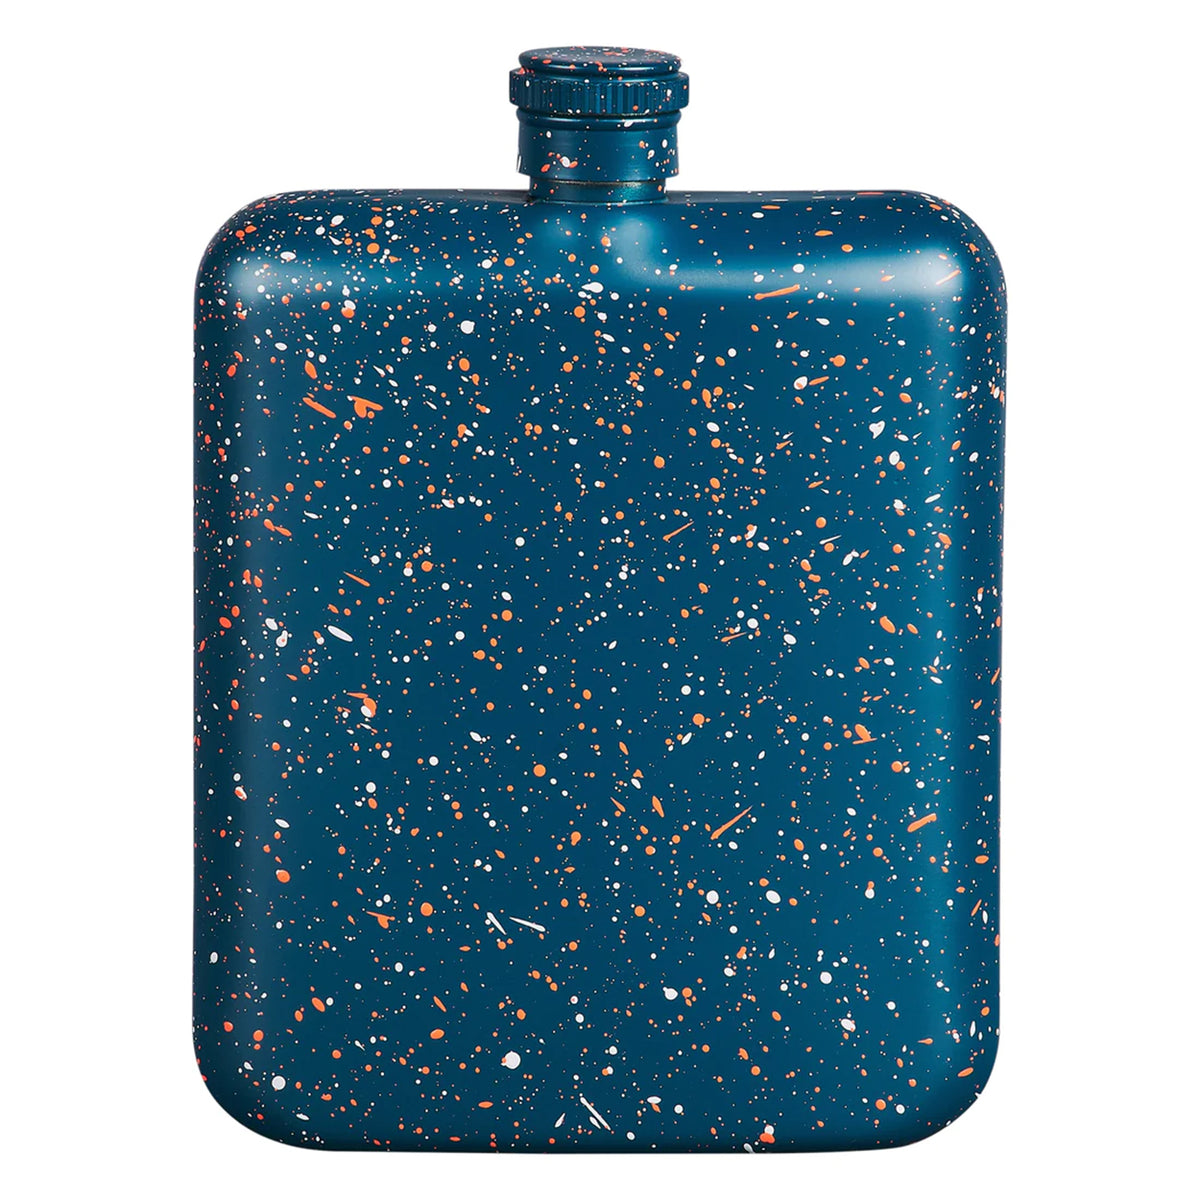 Blue Speckled Hip Flask, back view